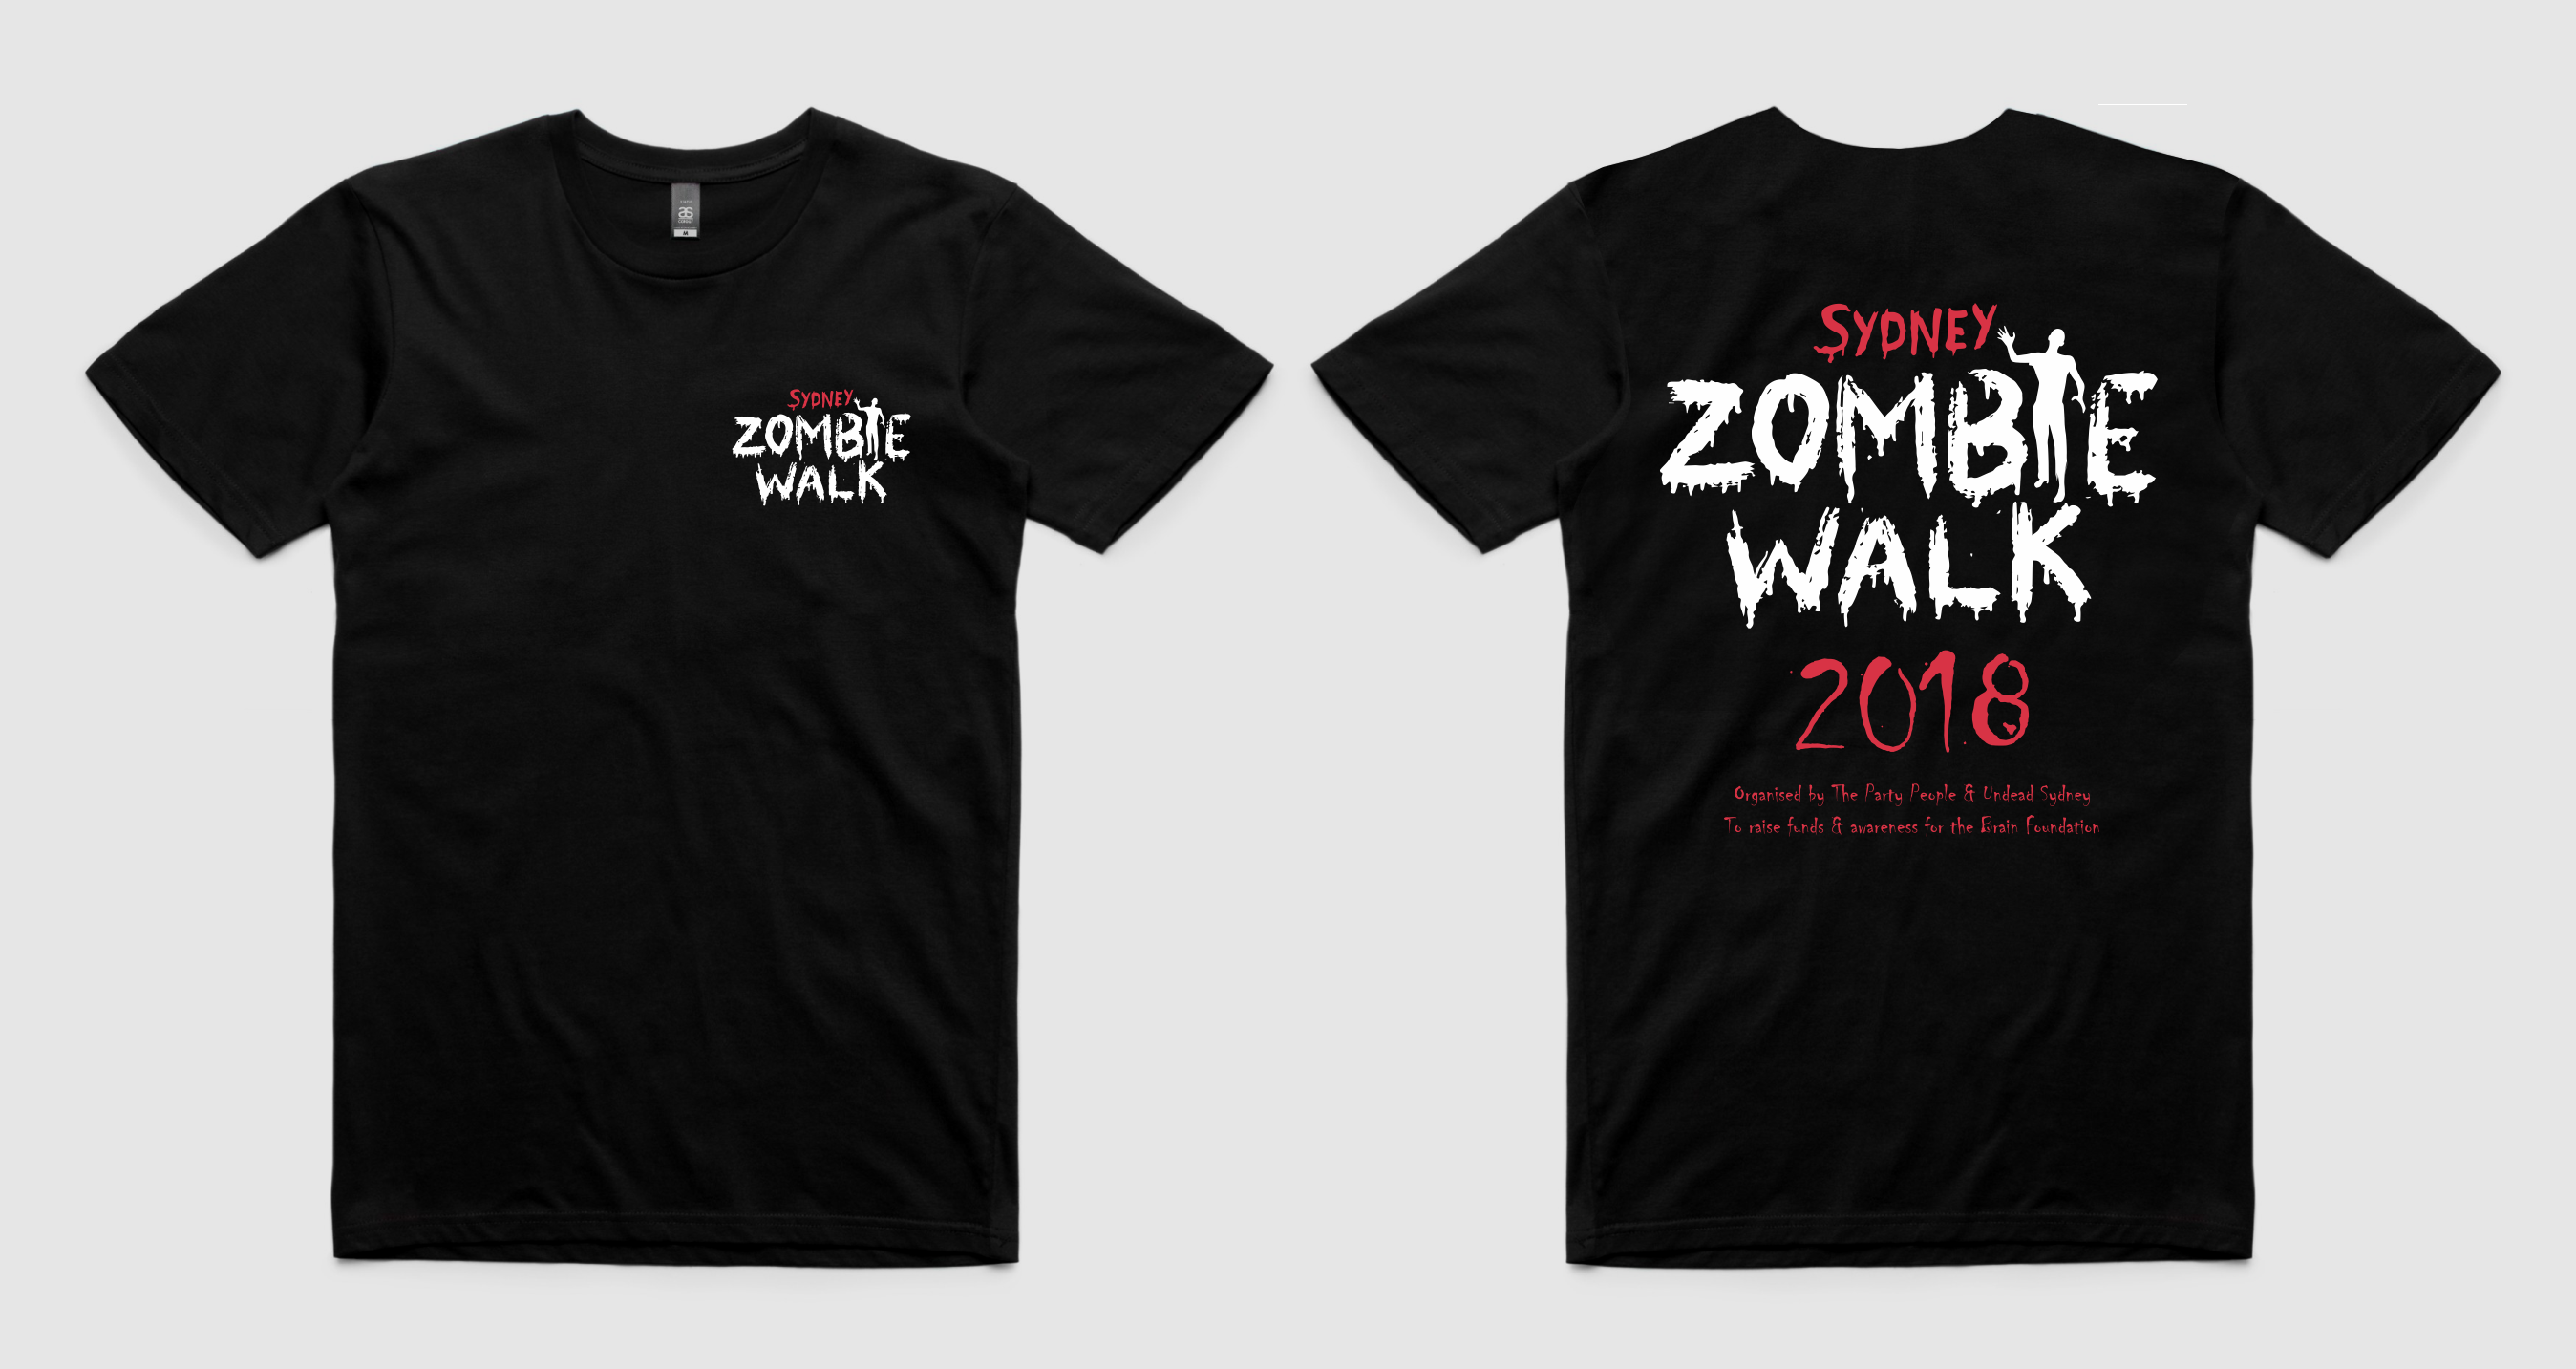 Sydney Zombie Walk 2018 Official Tshirt